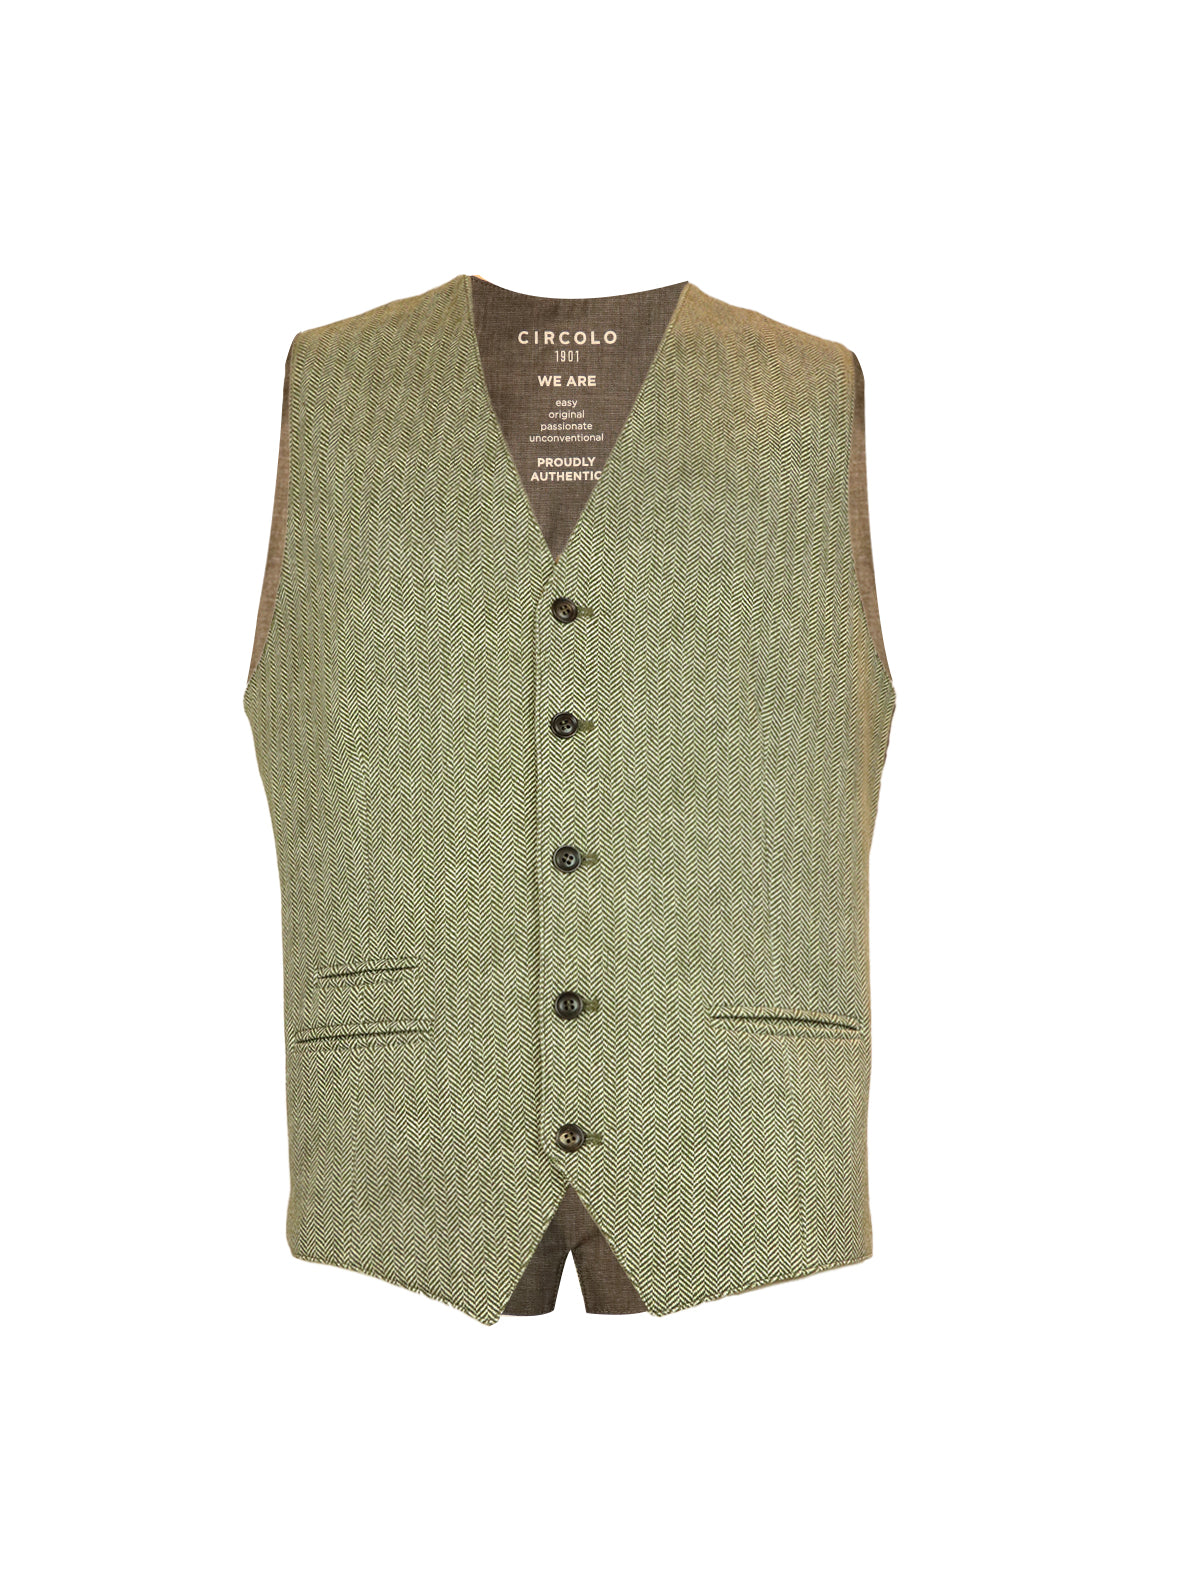 CIRCOLO 1901 Herringbone Vest in Caper Green